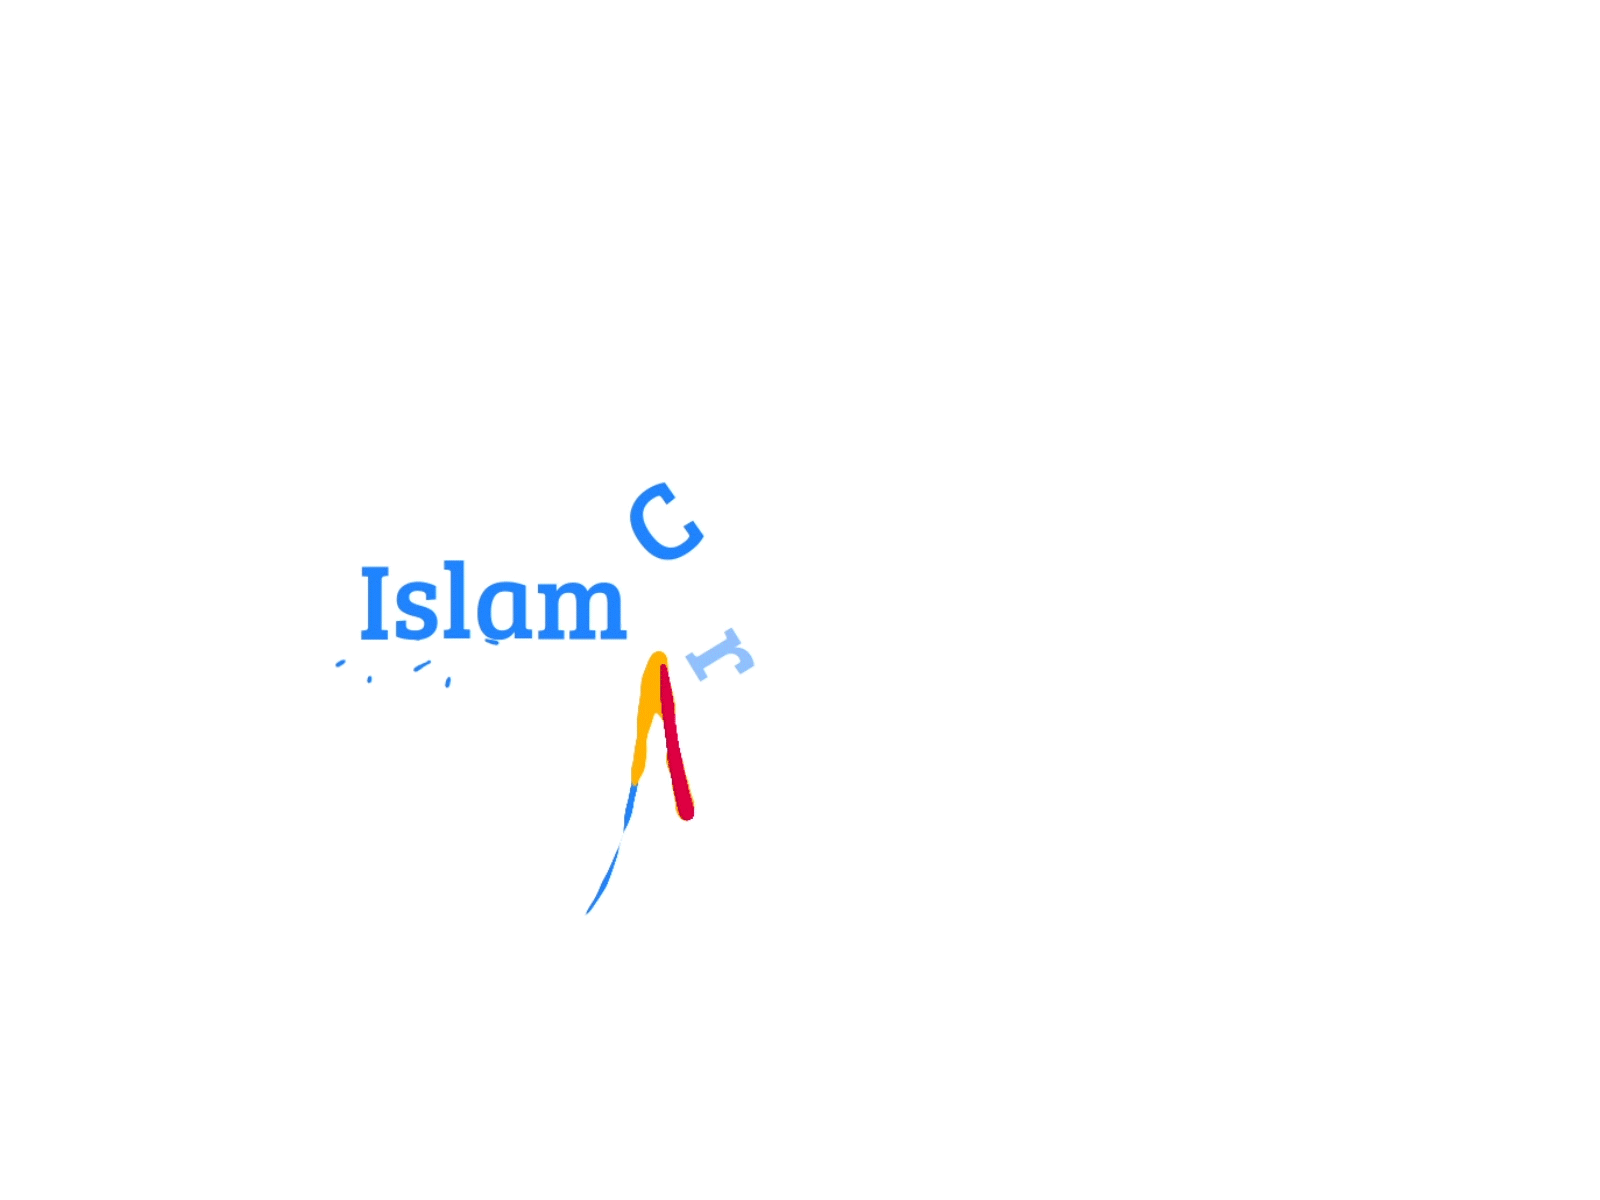 Islam Creative Hub